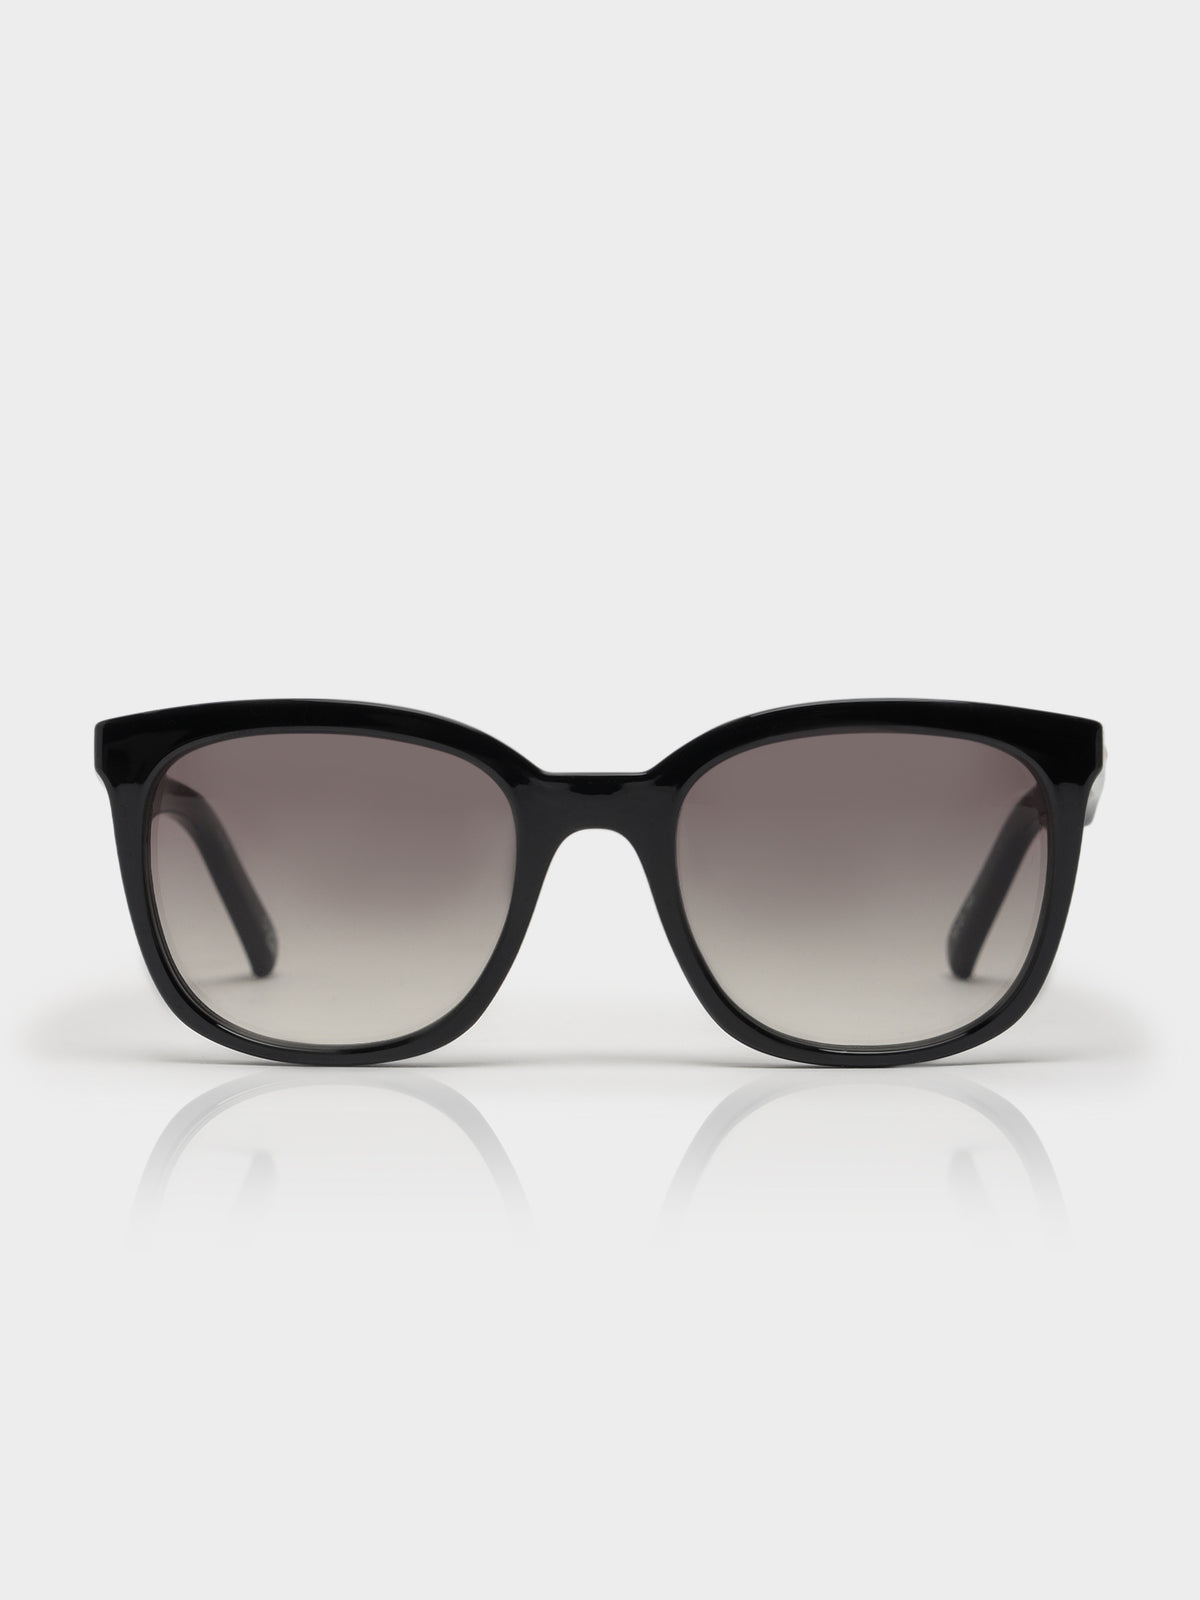 Veracious Sunglasses in Black